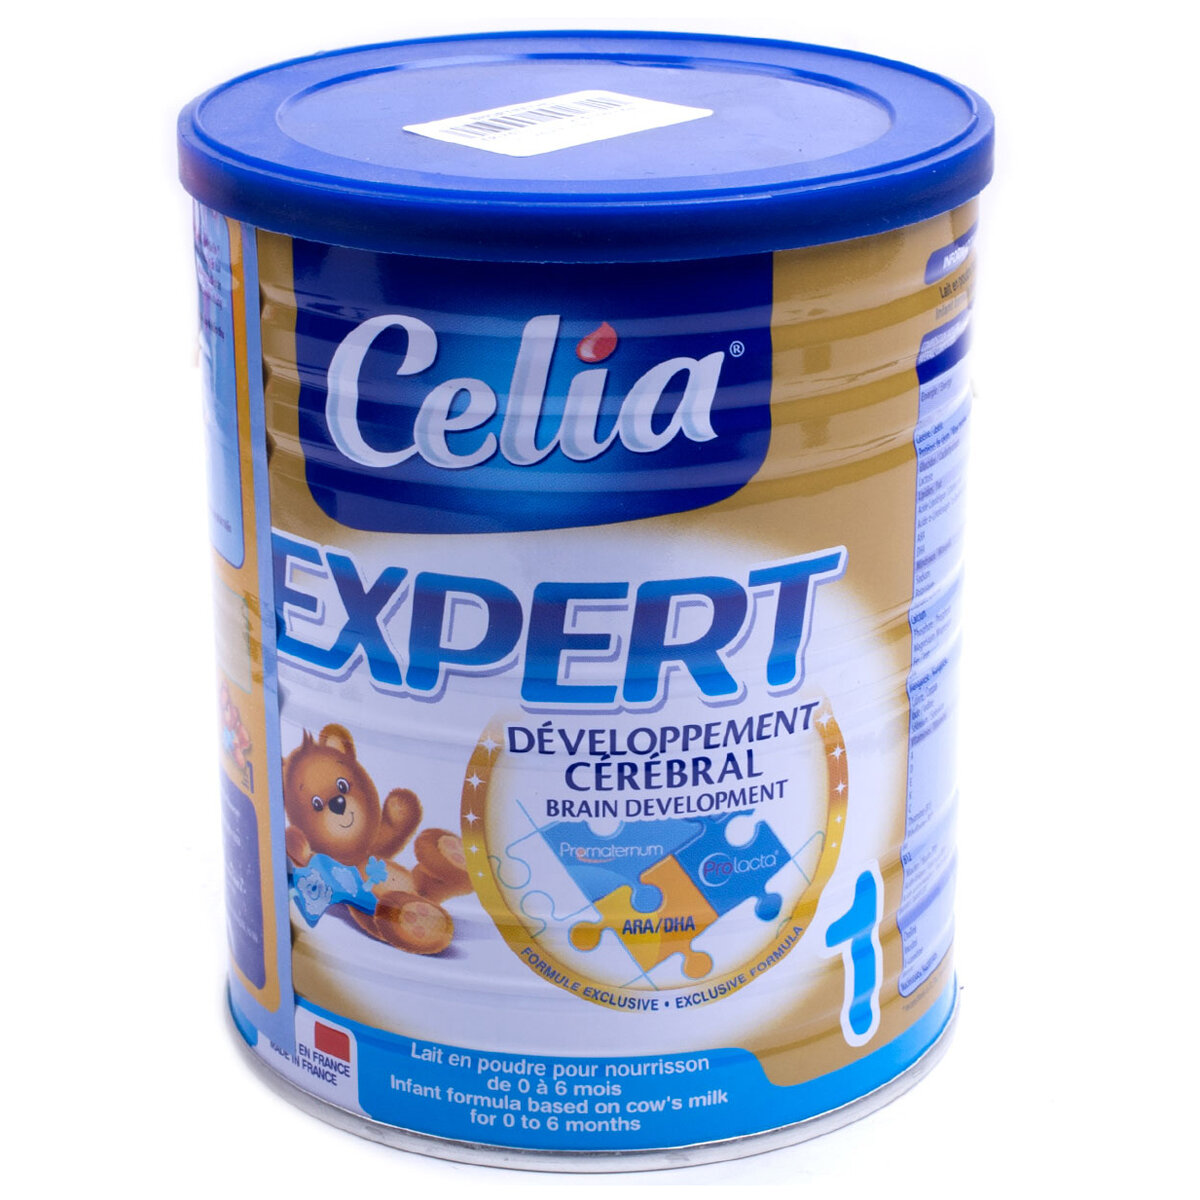 Sữa Celia – Siêu phẩm sữa đến từ nước Pháp